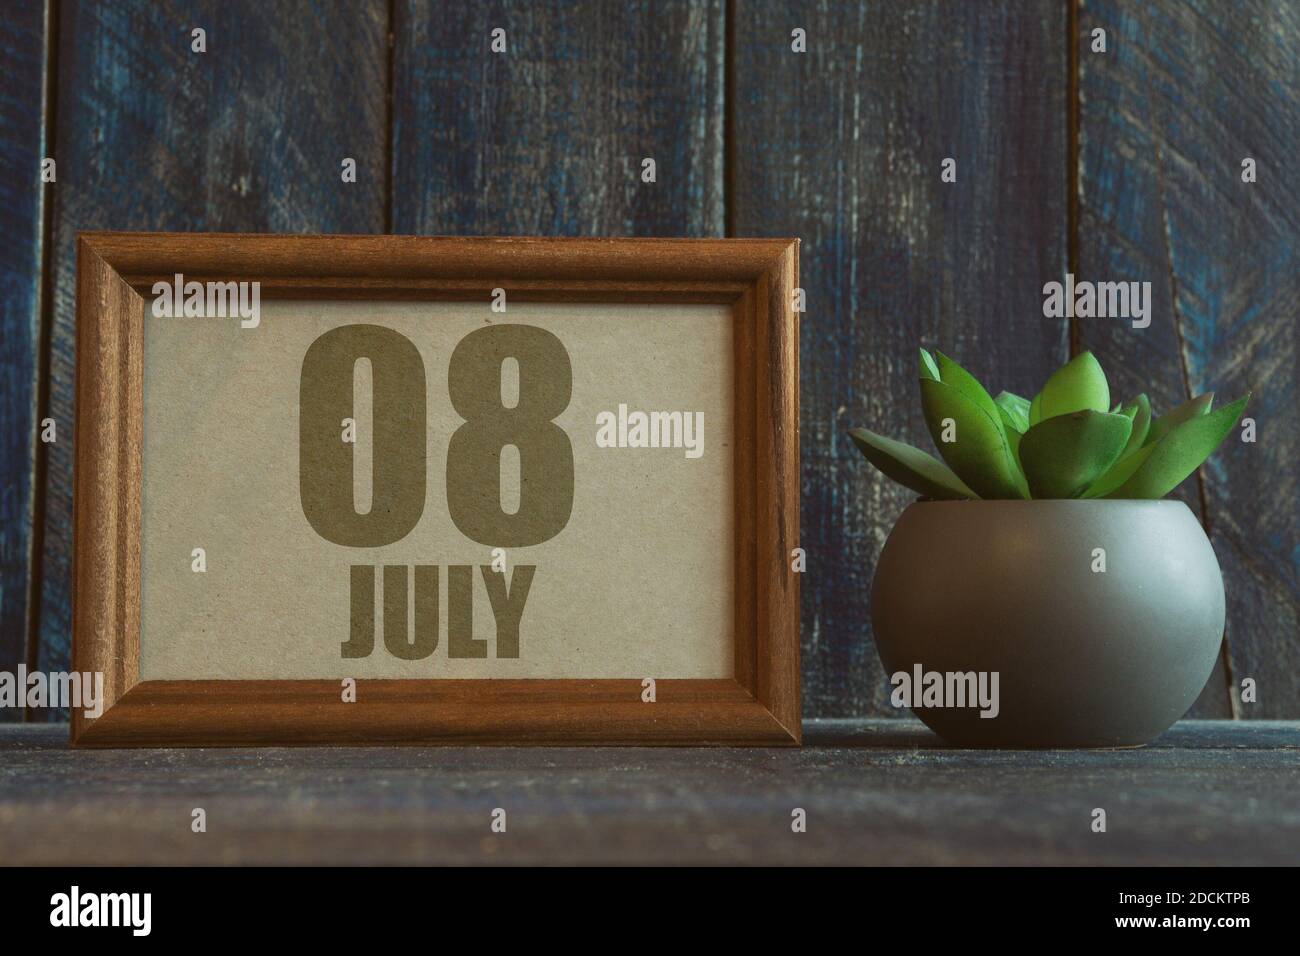 juli. Tag 8 des Monats, Datum im Rahmen neben Sukkulenten auf hölzernen Hintergrund Sommermonat, Tag des Jahres Konzept. Stockfoto